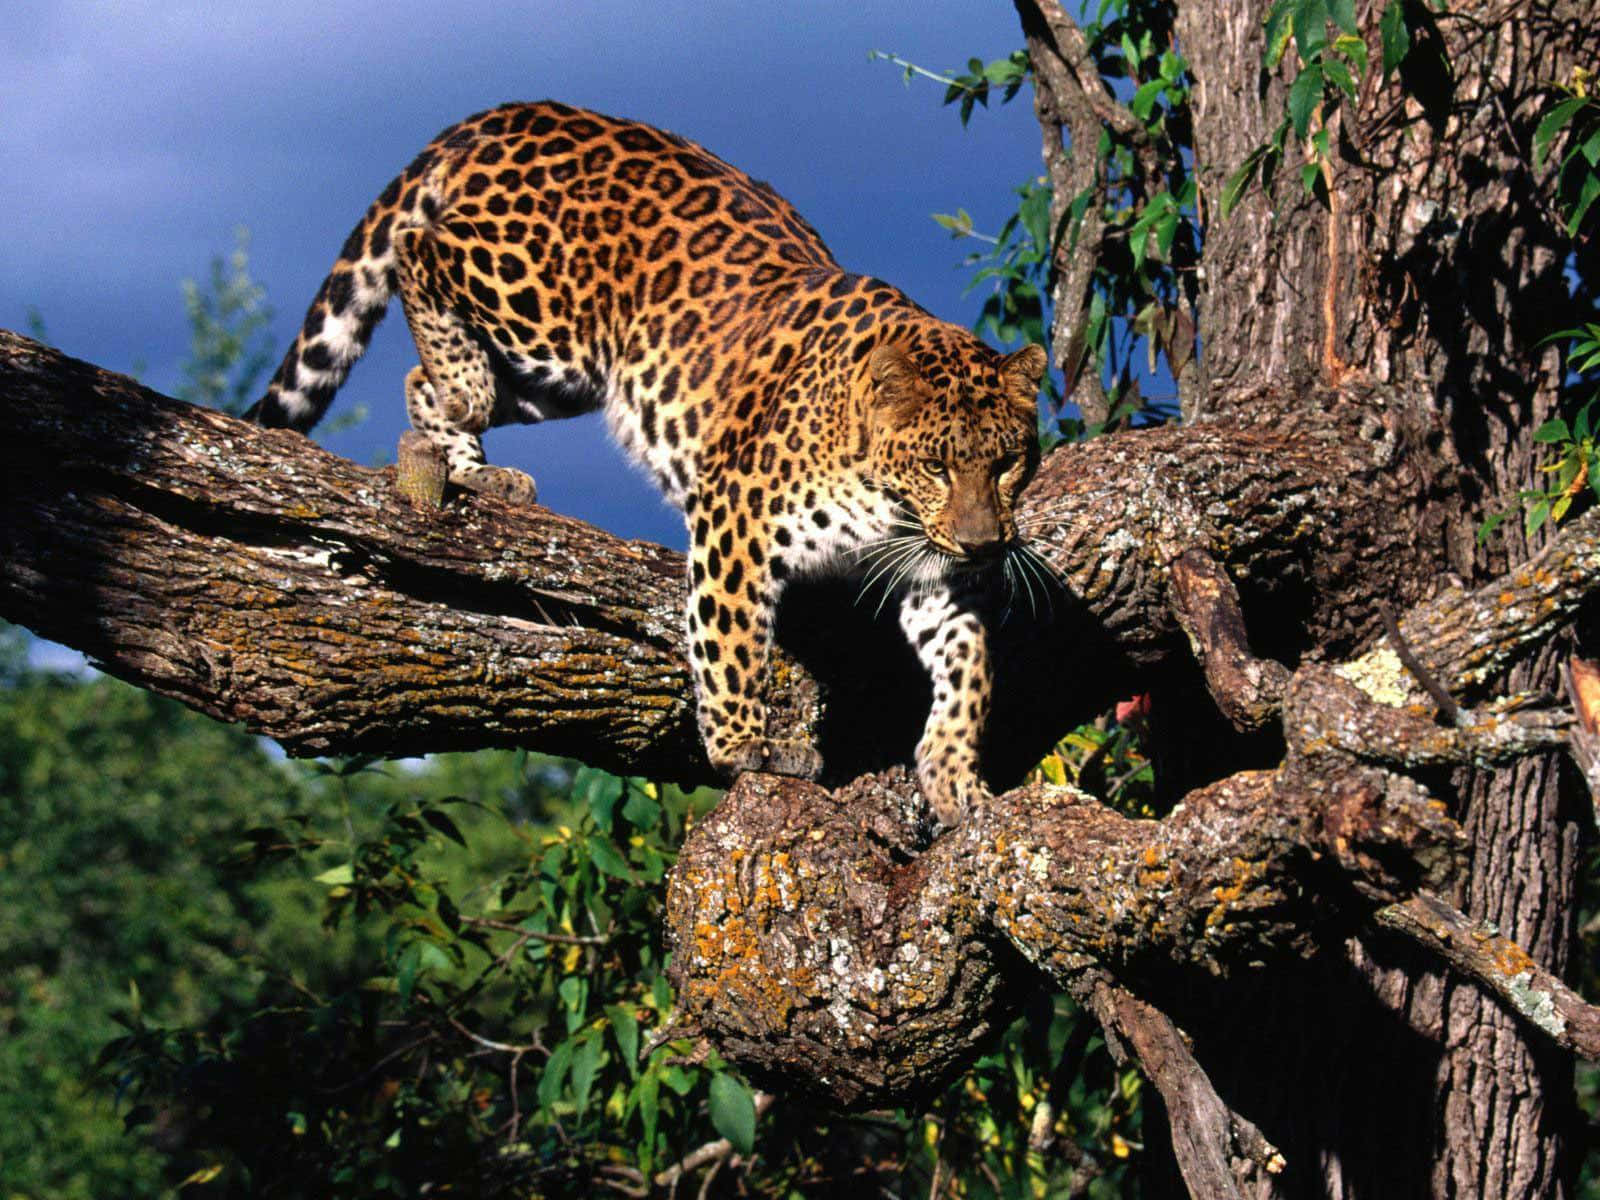 Imagende Un Leopardo Salvaje Caminando Sobre Una Rama.